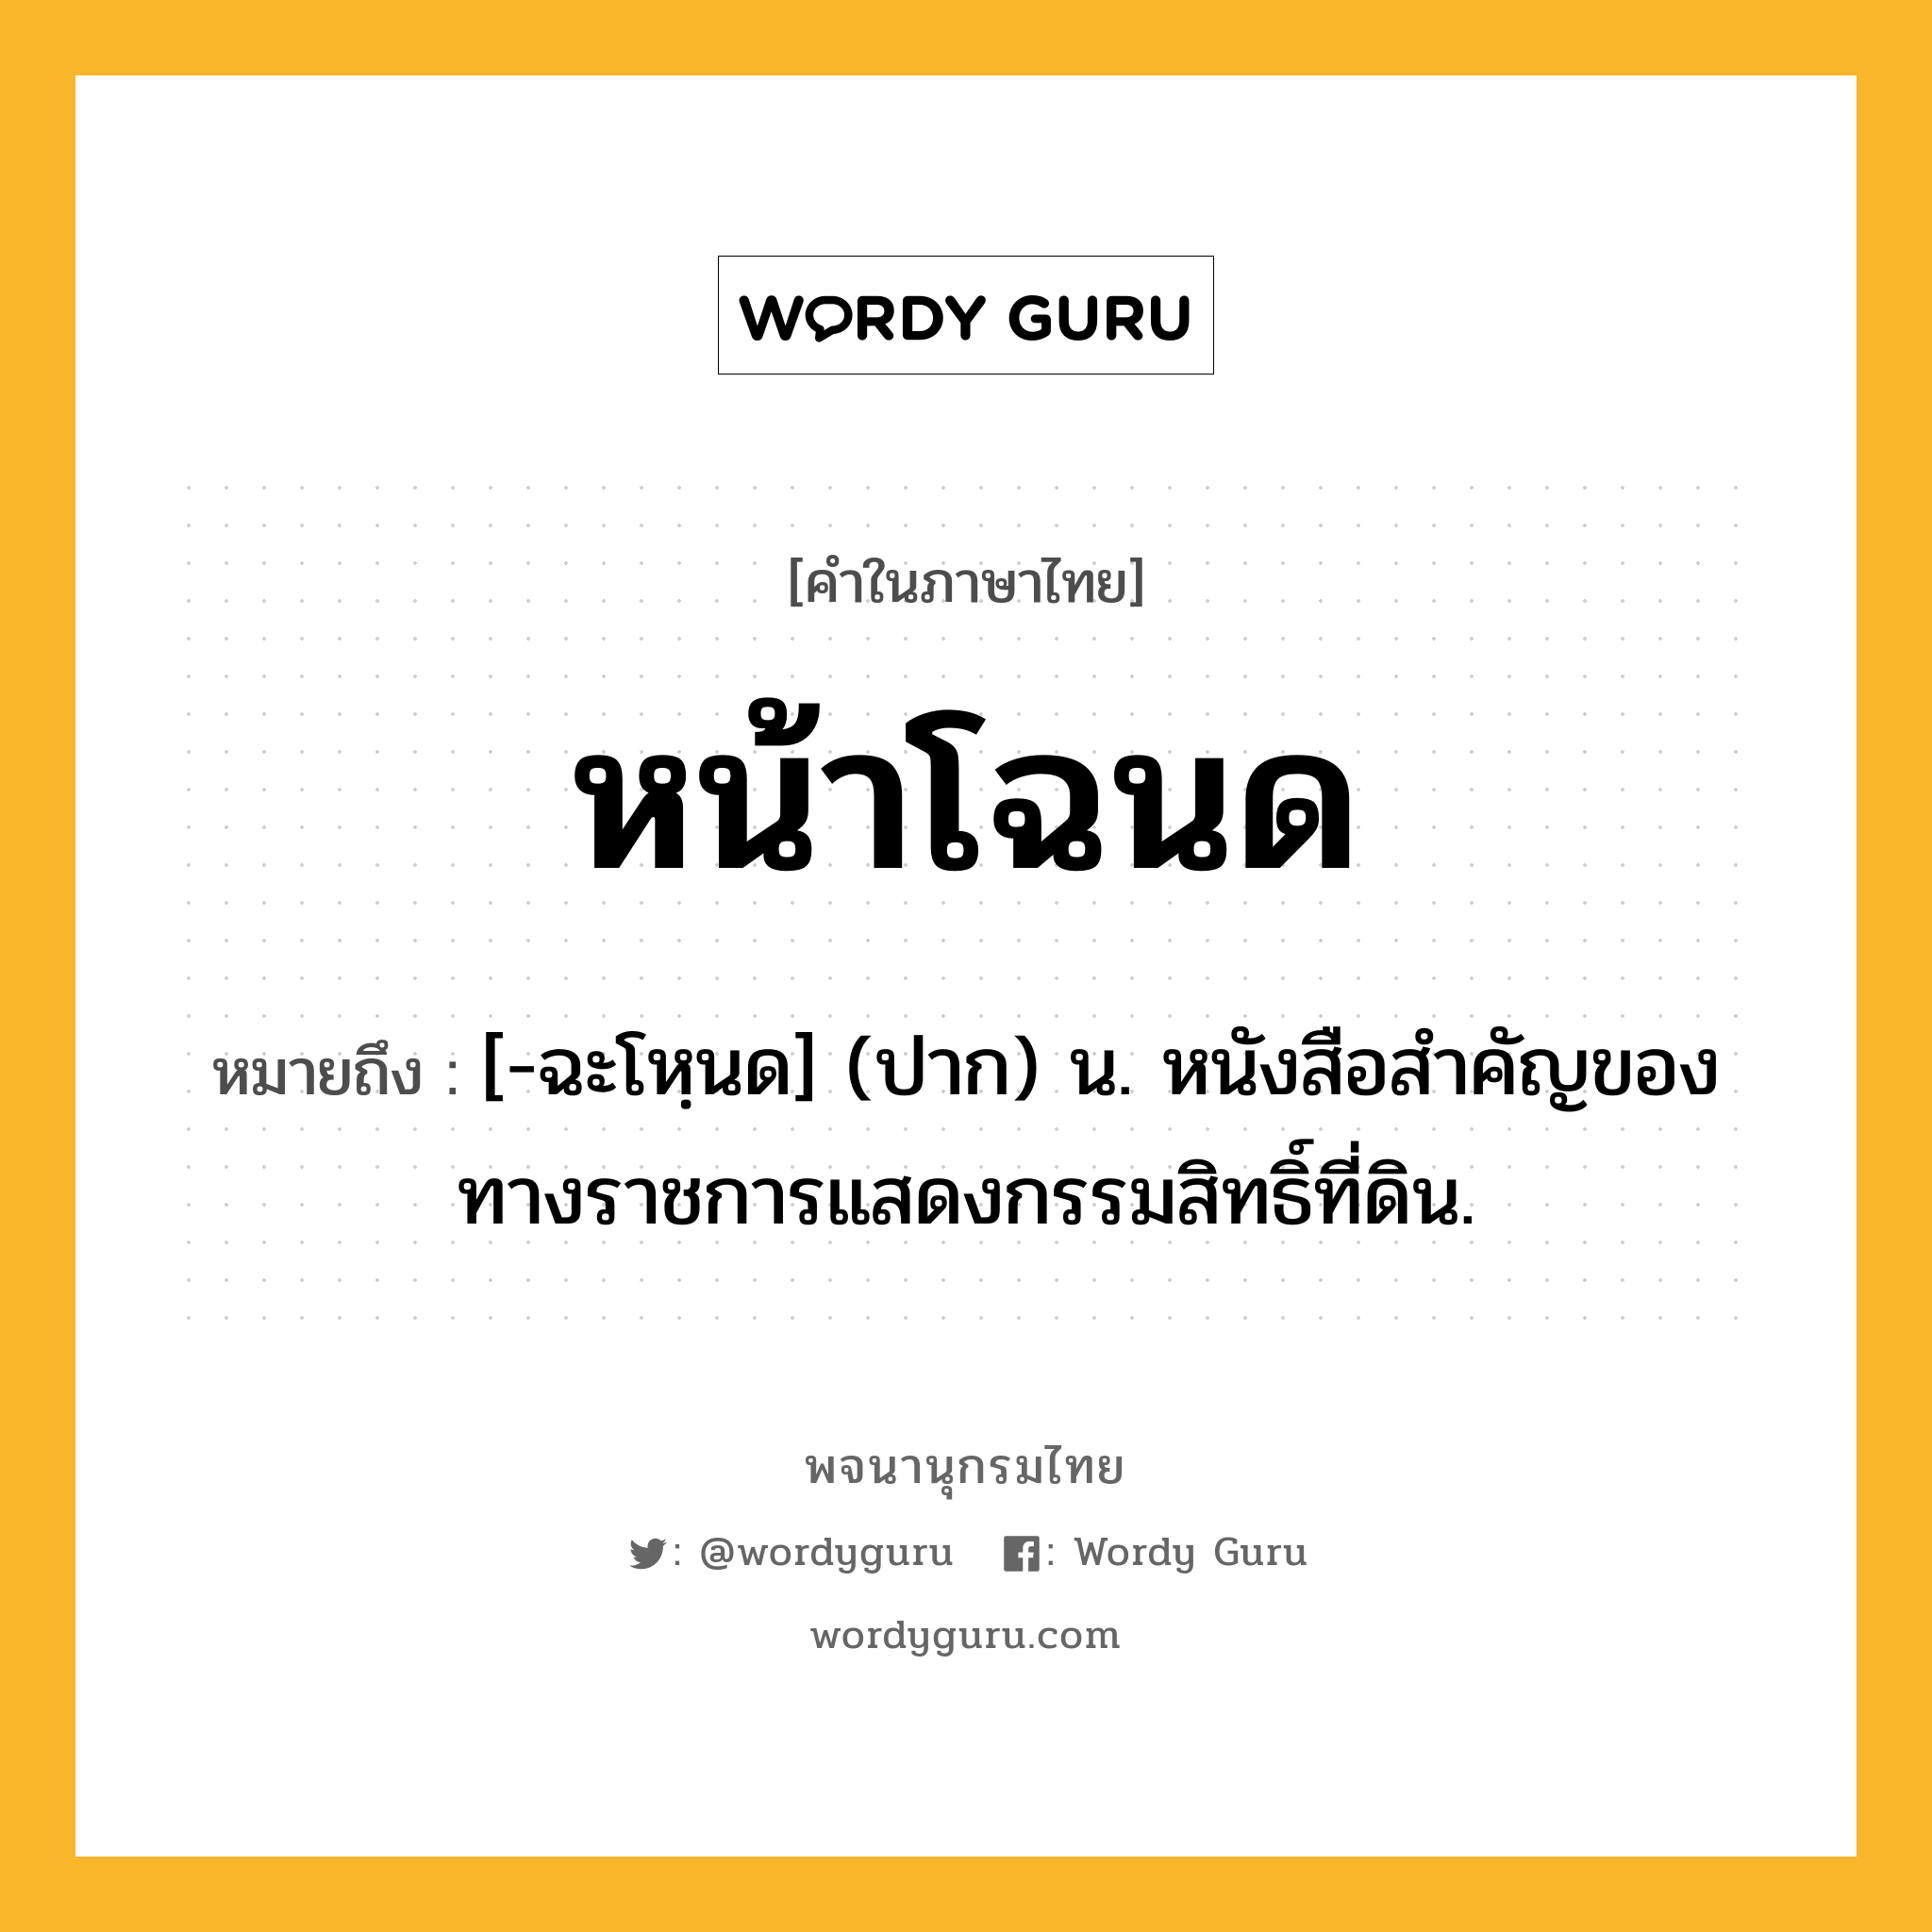 หน้าโฉนด ความหมาย หมายถึงอะไร?, คำในภาษาไทย หน้าโฉนด หมายถึง [-ฉะโหฺนด] (ปาก) น. หนังสือสำคัญของทางราชการแสดงกรรมสิทธิ์ที่ดิน.